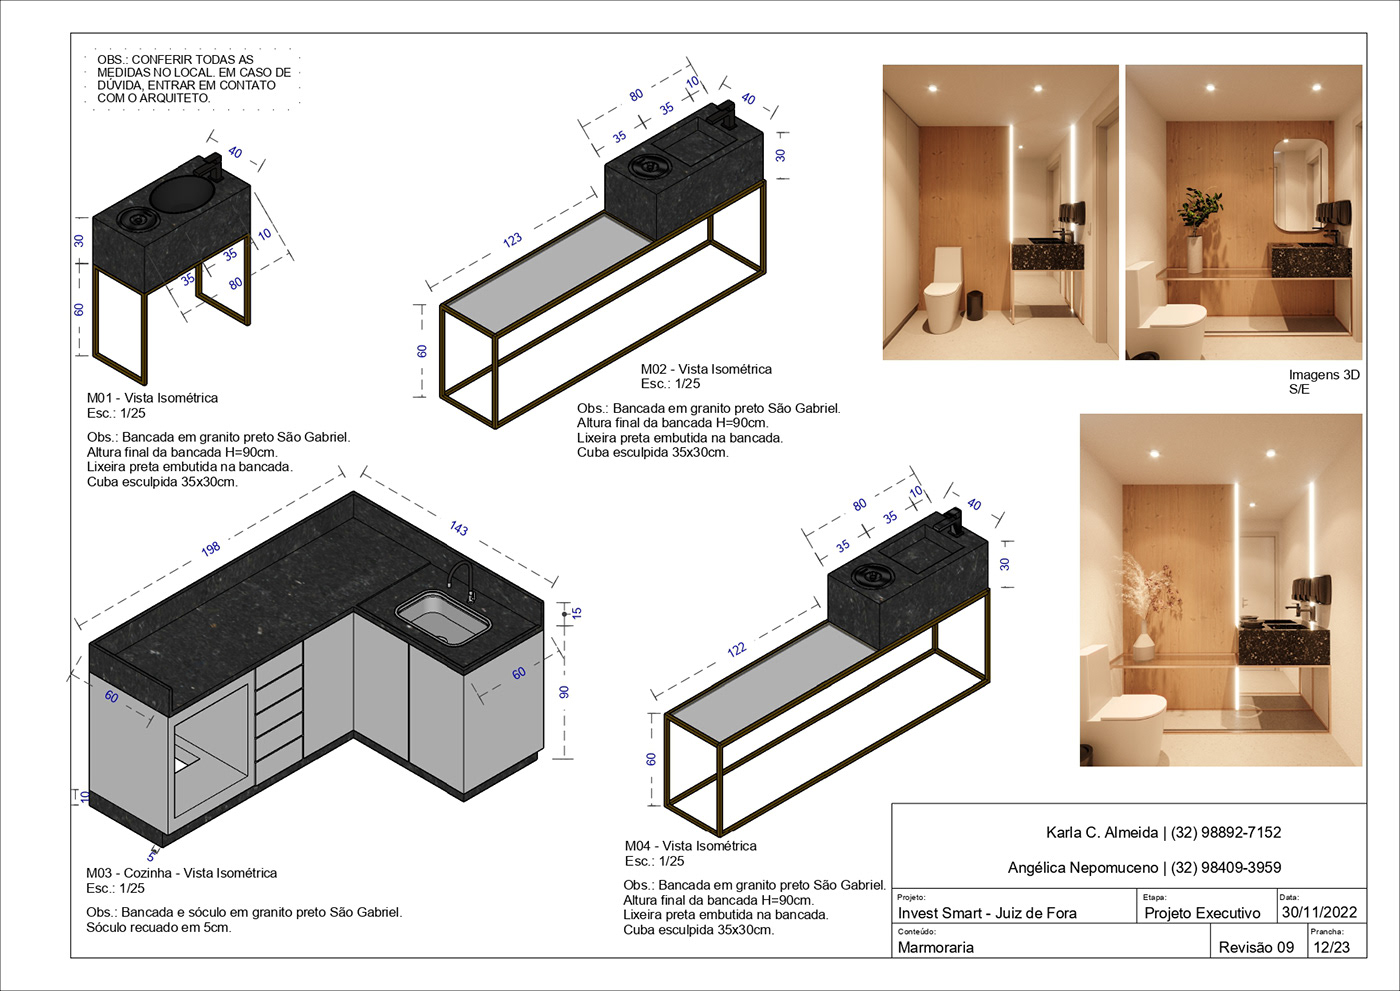 Interior design designer architecture visualization modern archviz 3D architect